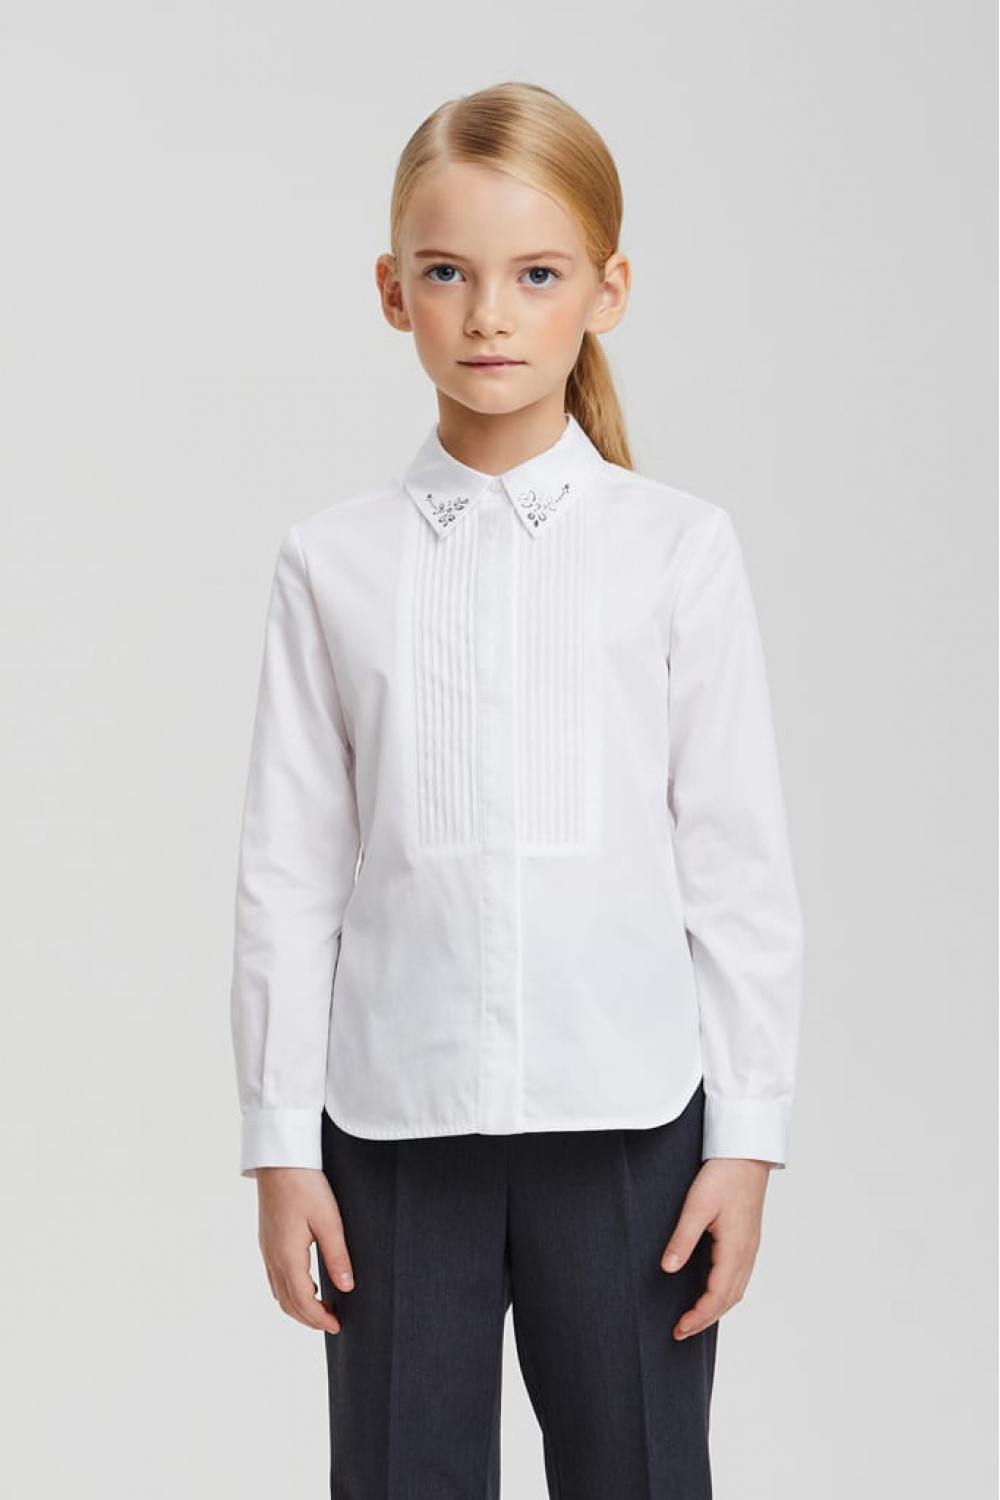 Хлопковая рубашка с декорированным воротником (SSFSG-029-23011-200) Silver Spoon